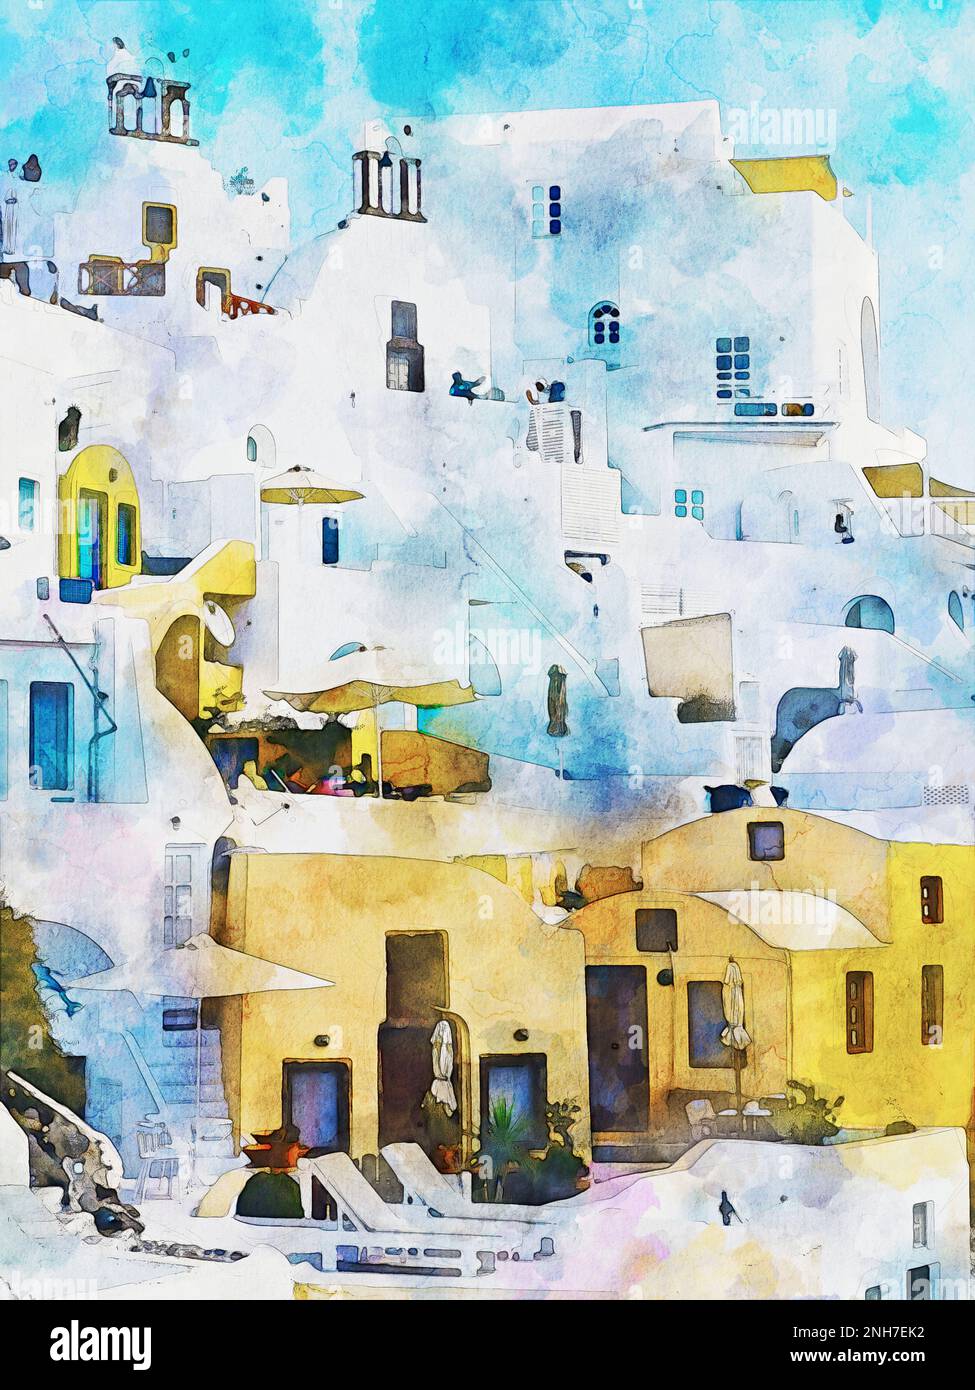 Illustration aquarelle de l'île de Santorin, Grèce. Aquarelle. Banque D'Images